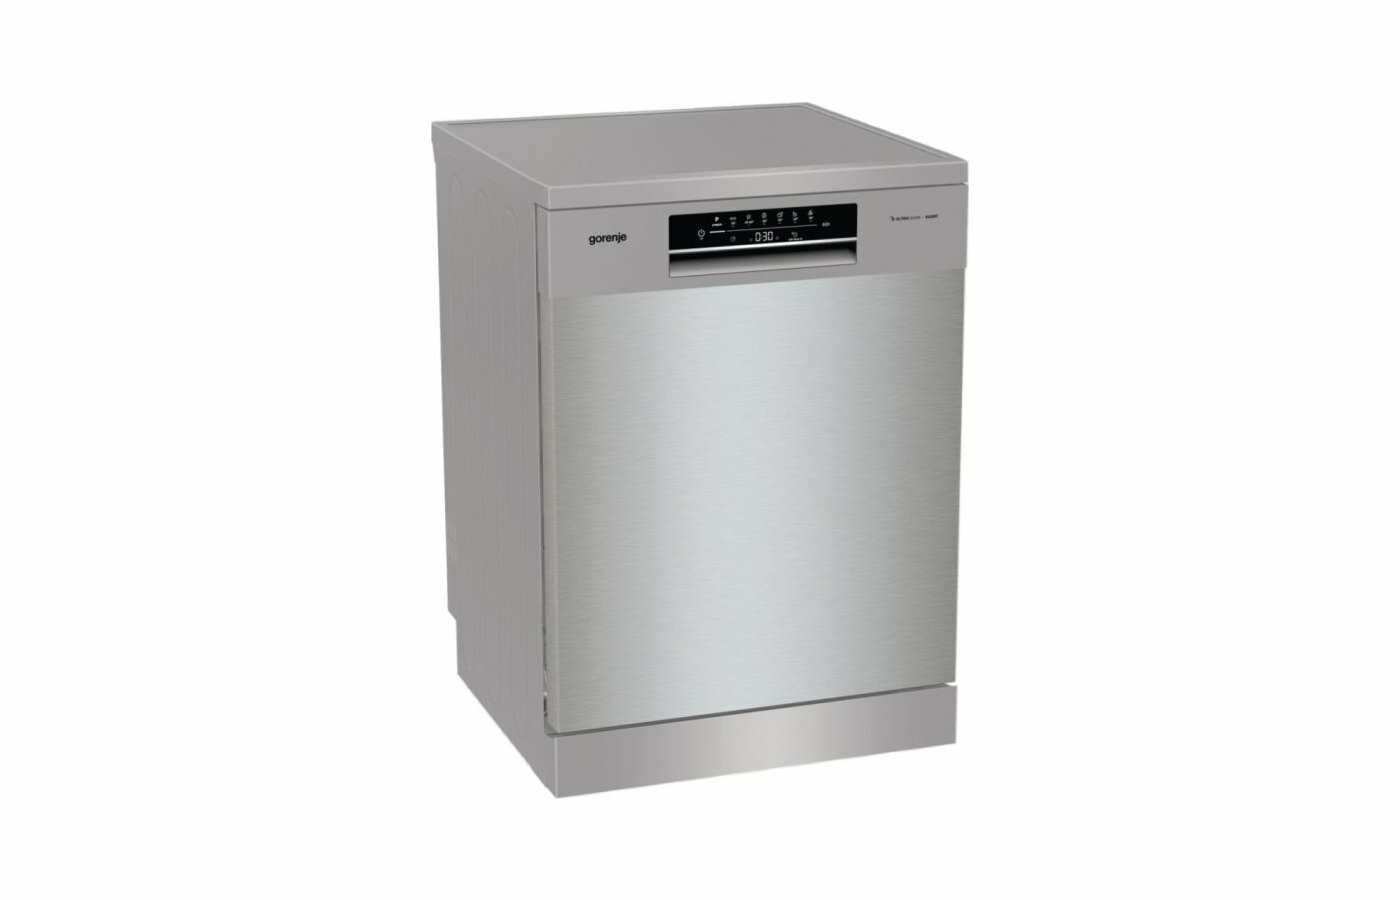 Посудомоечная машина Gorenje GS643D90X, класс энергопотребления A+++, 16 комплектов, автооткрывание дверцы TotalDry, полный AquaStop, отсрочка старта 24 ч, самоочистка, серебристый